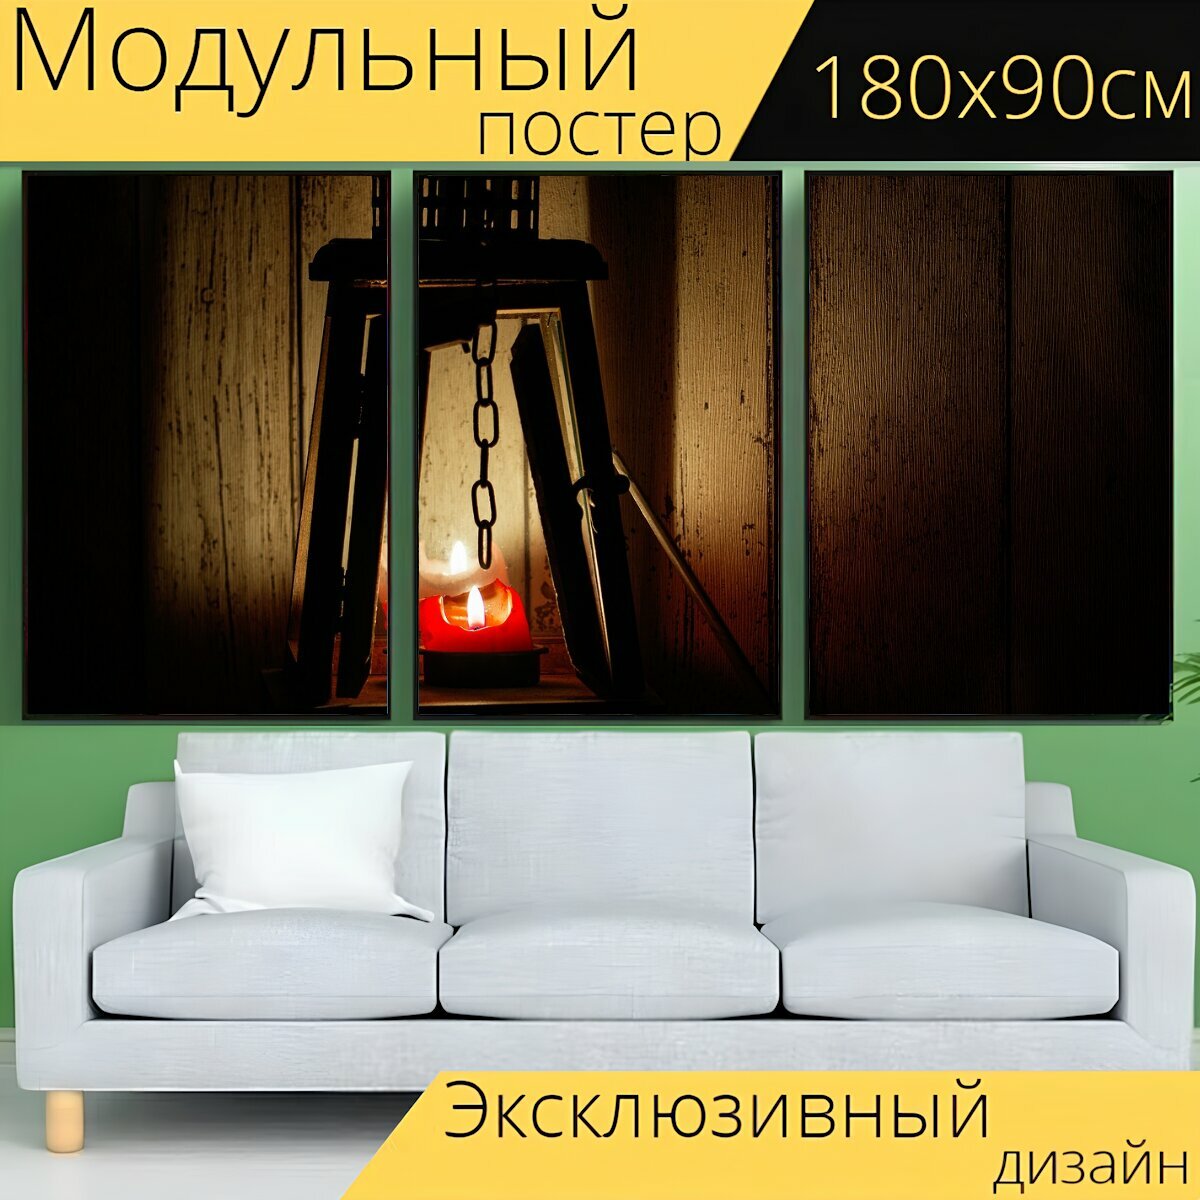 Модульный постер "Фонарь, свет, напольная лампа" 180 x 90 см. для интерьера